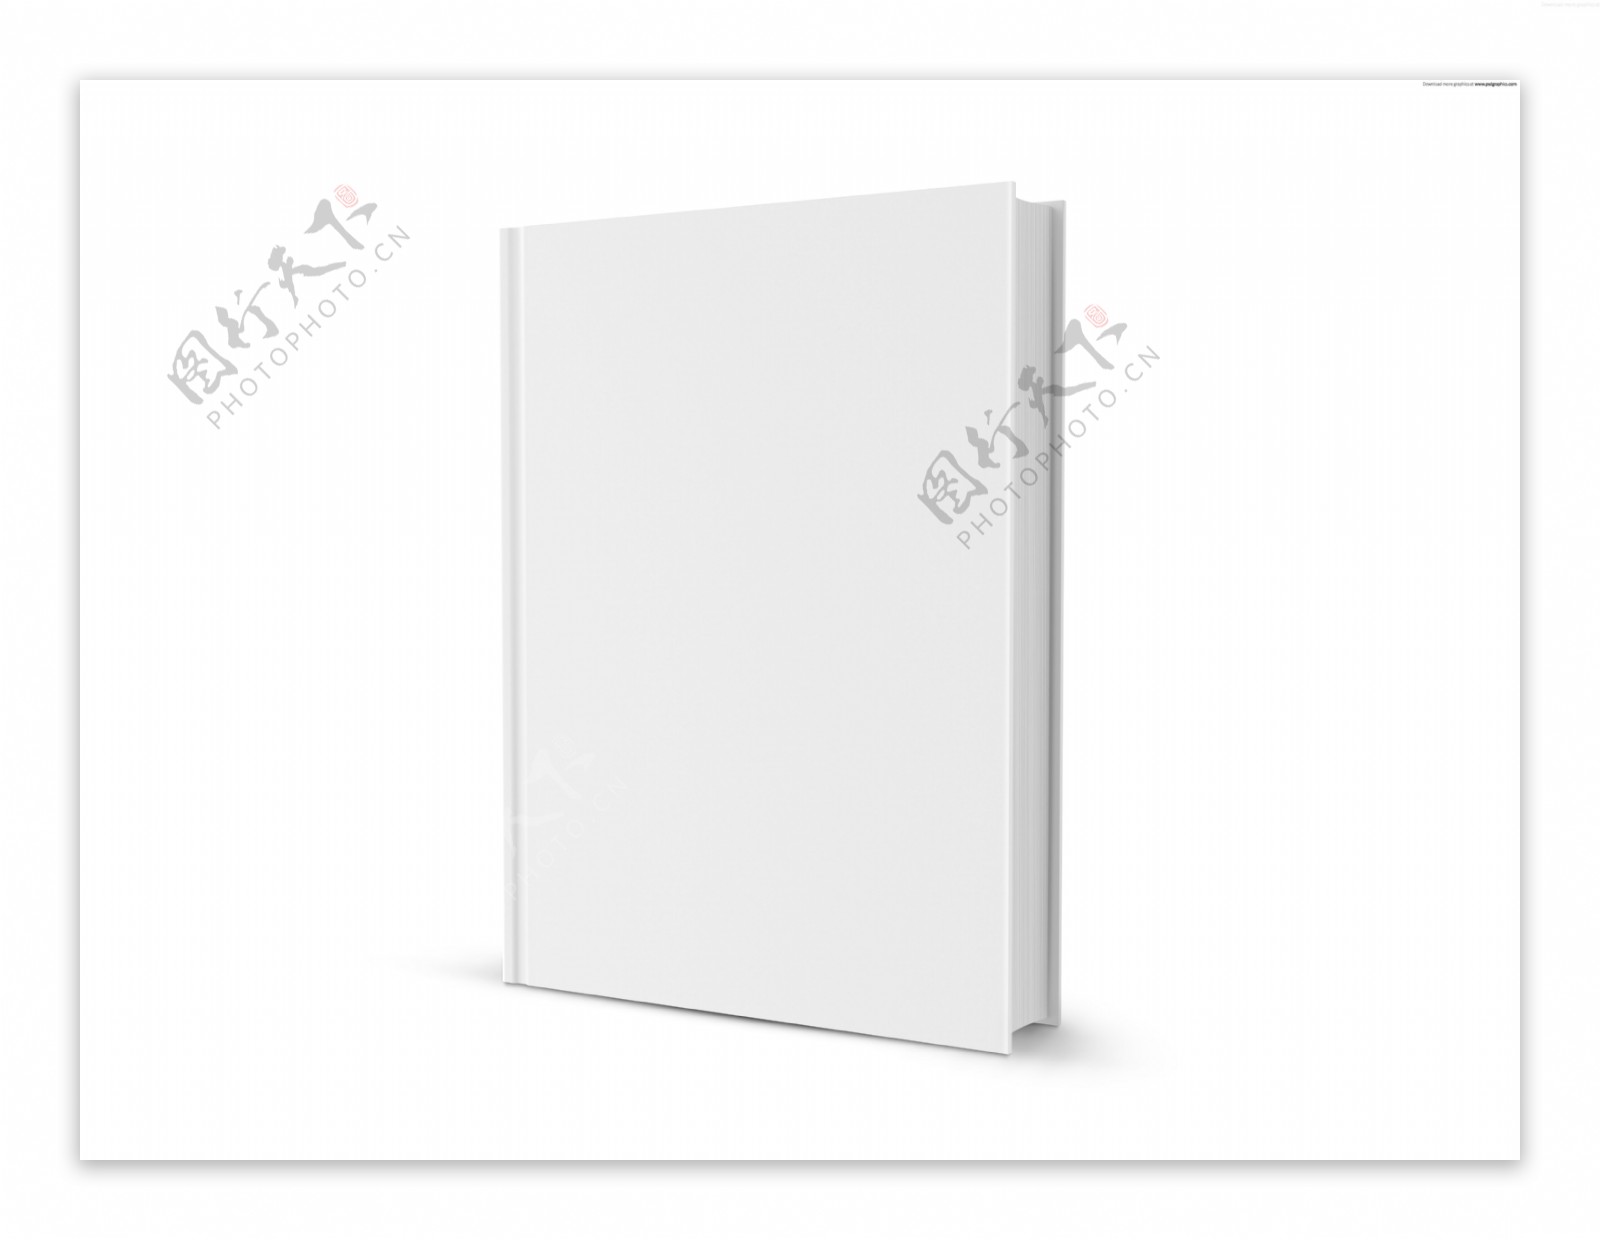 3d超高清白色书籍可做书籍画册封面图片